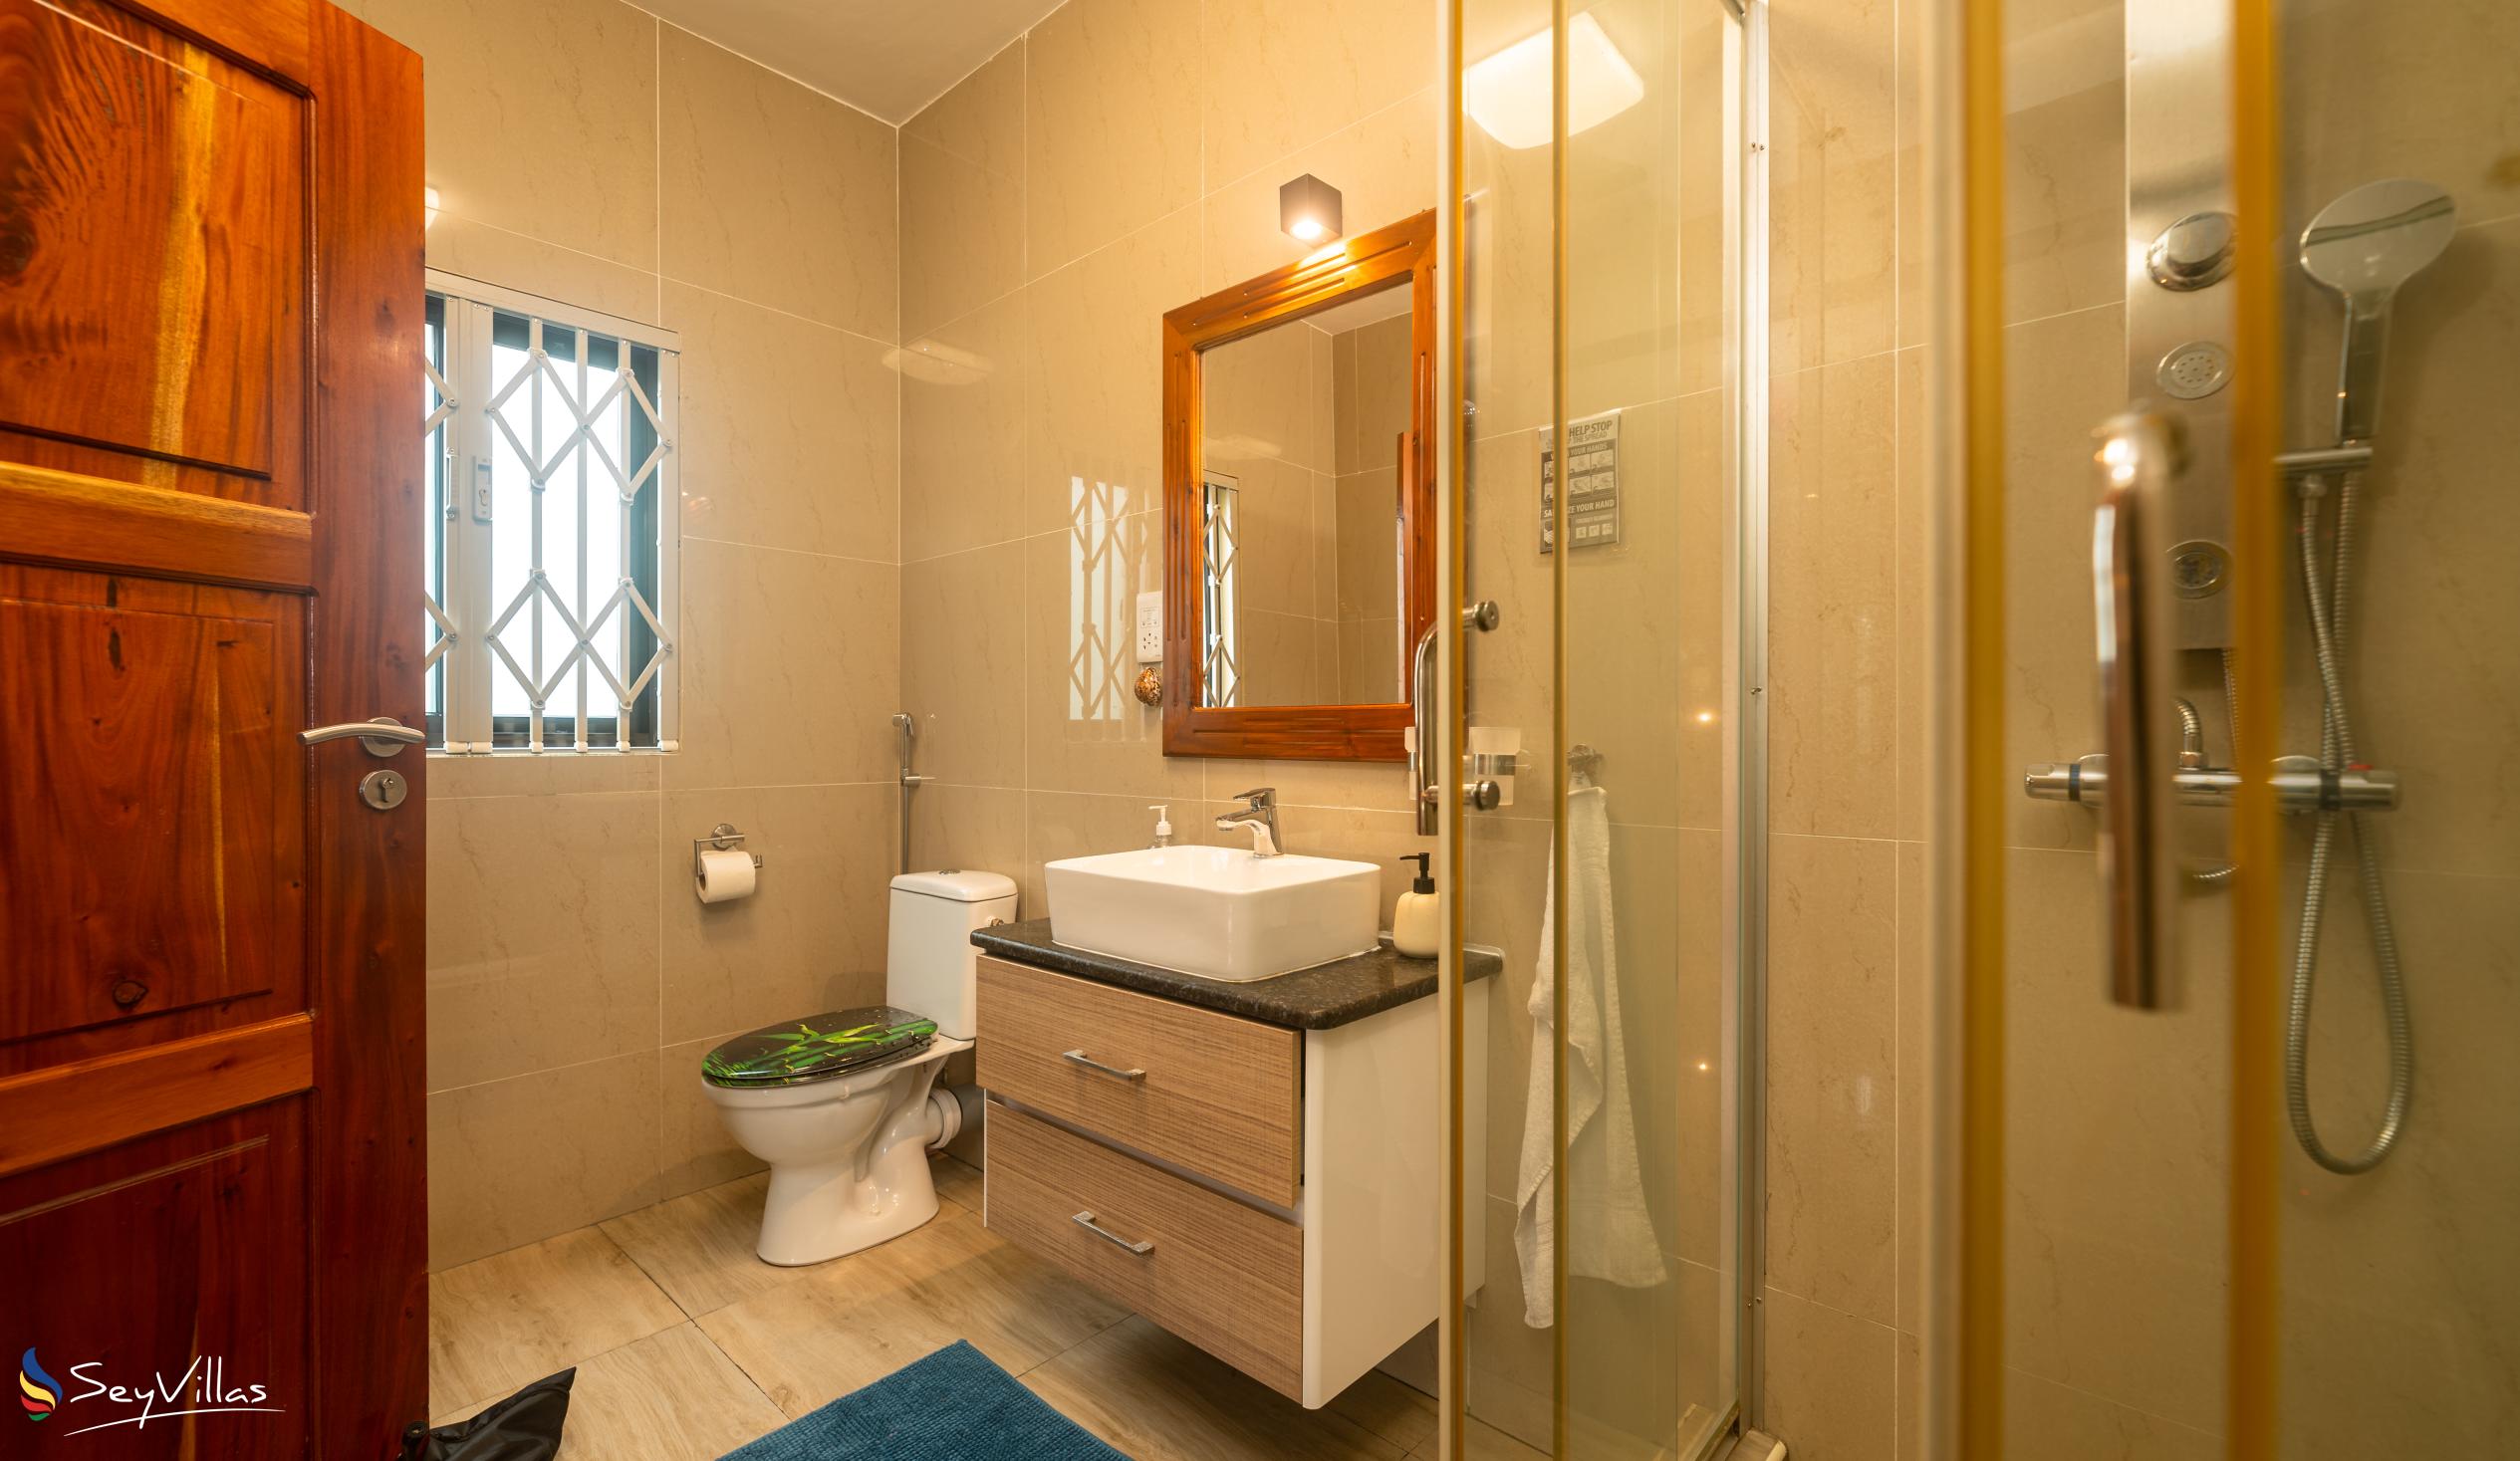 Foto 44: La Vida Selfcatering Apartments - Appartement 2 chambres - Mahé (Seychelles)